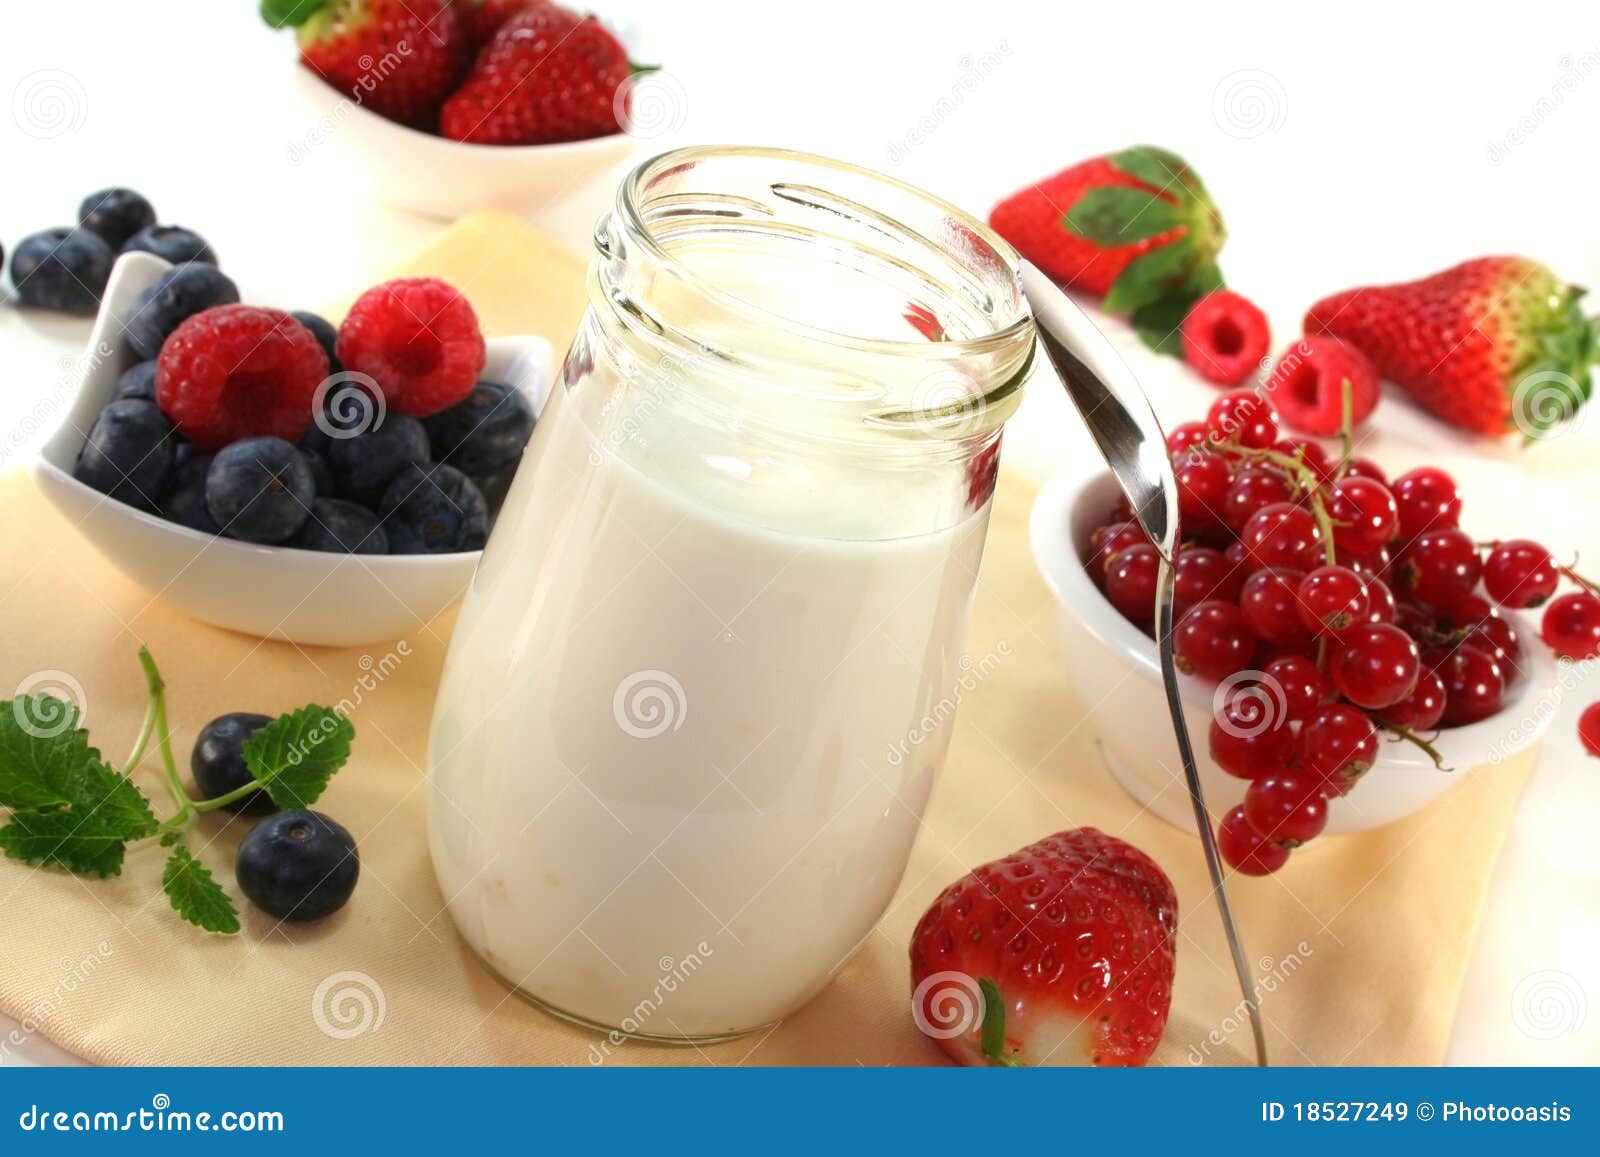 树莓酸奶品牌牛奶或酸奶产品品牌或广告设计新包装设计 向量例证. 插画 包括有 标签, 无格式, 包装, 食物 - 167297771